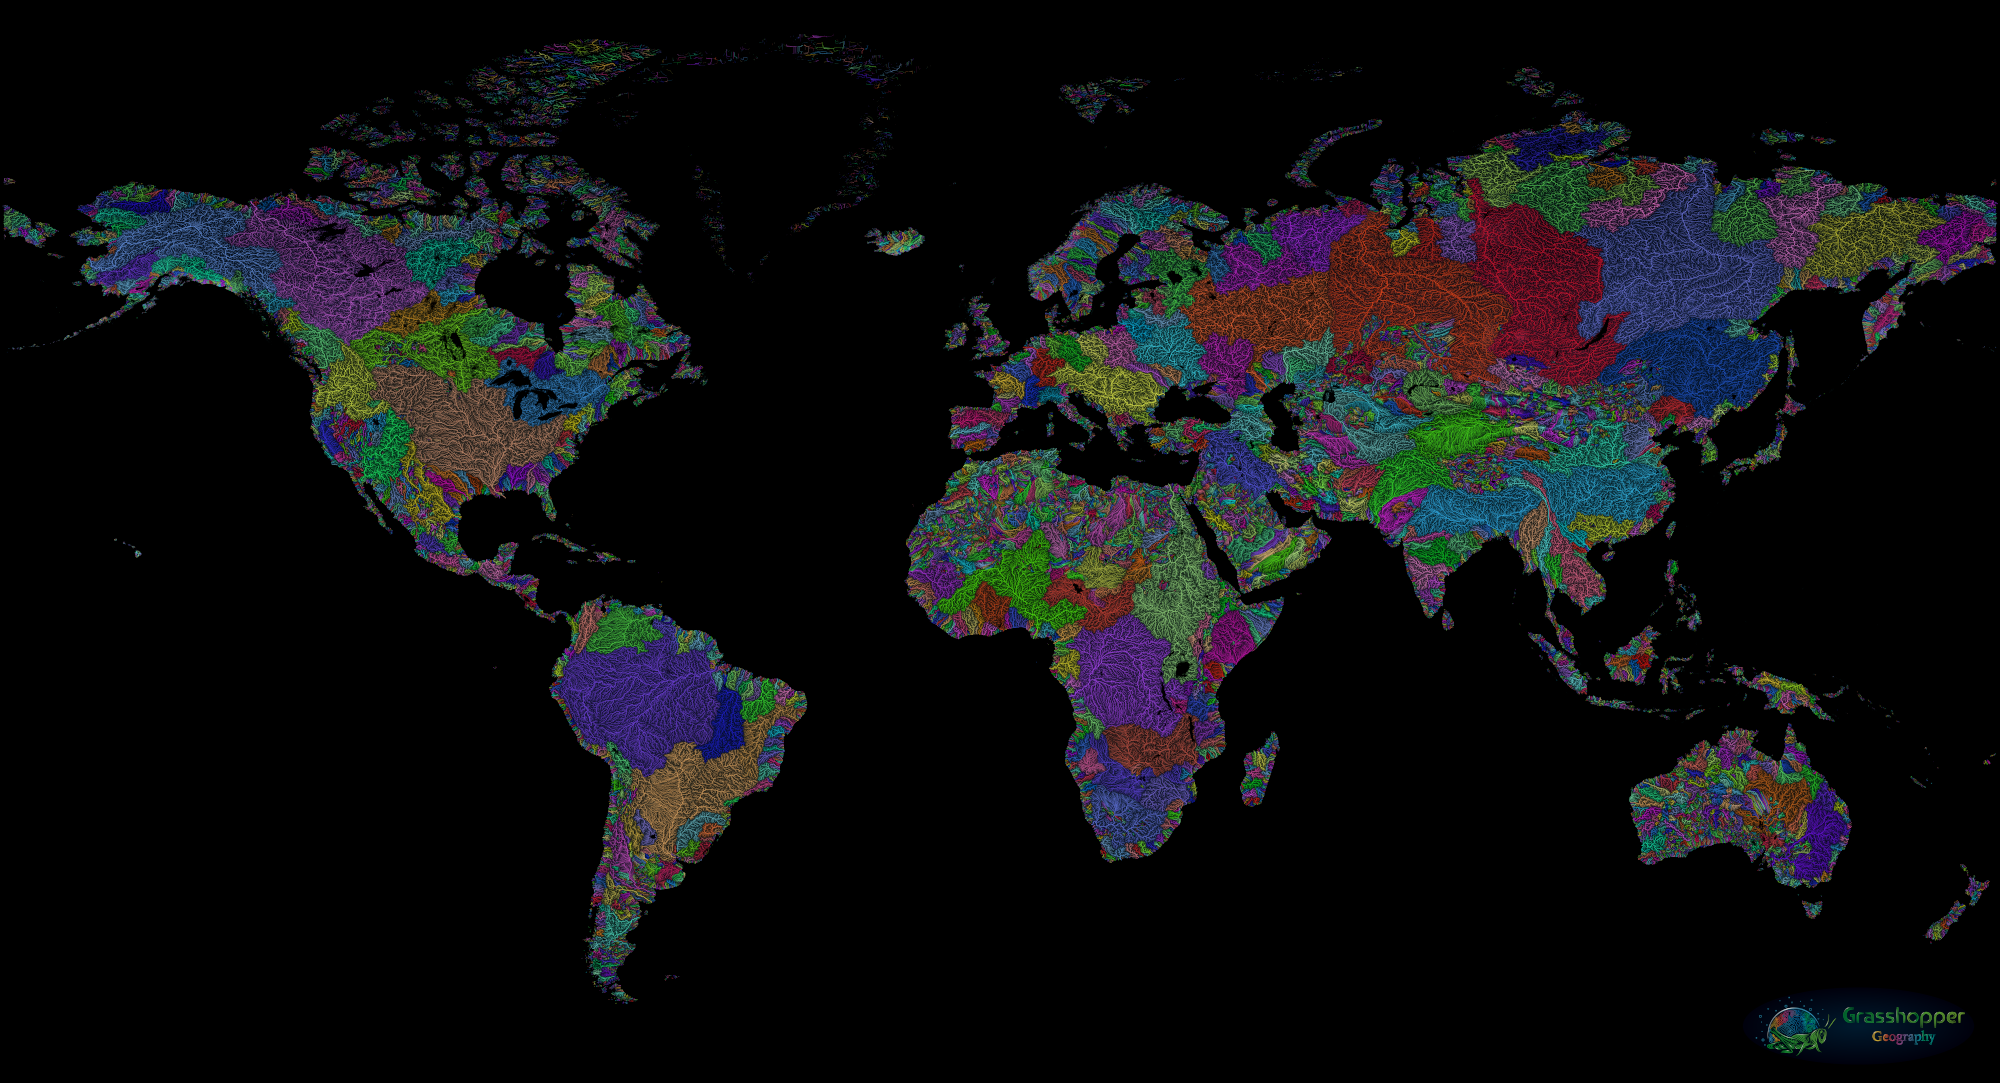 Szűcs Róbert geoinformatikus világhírű lett művészien átszínezett vízrajzi térképeivel